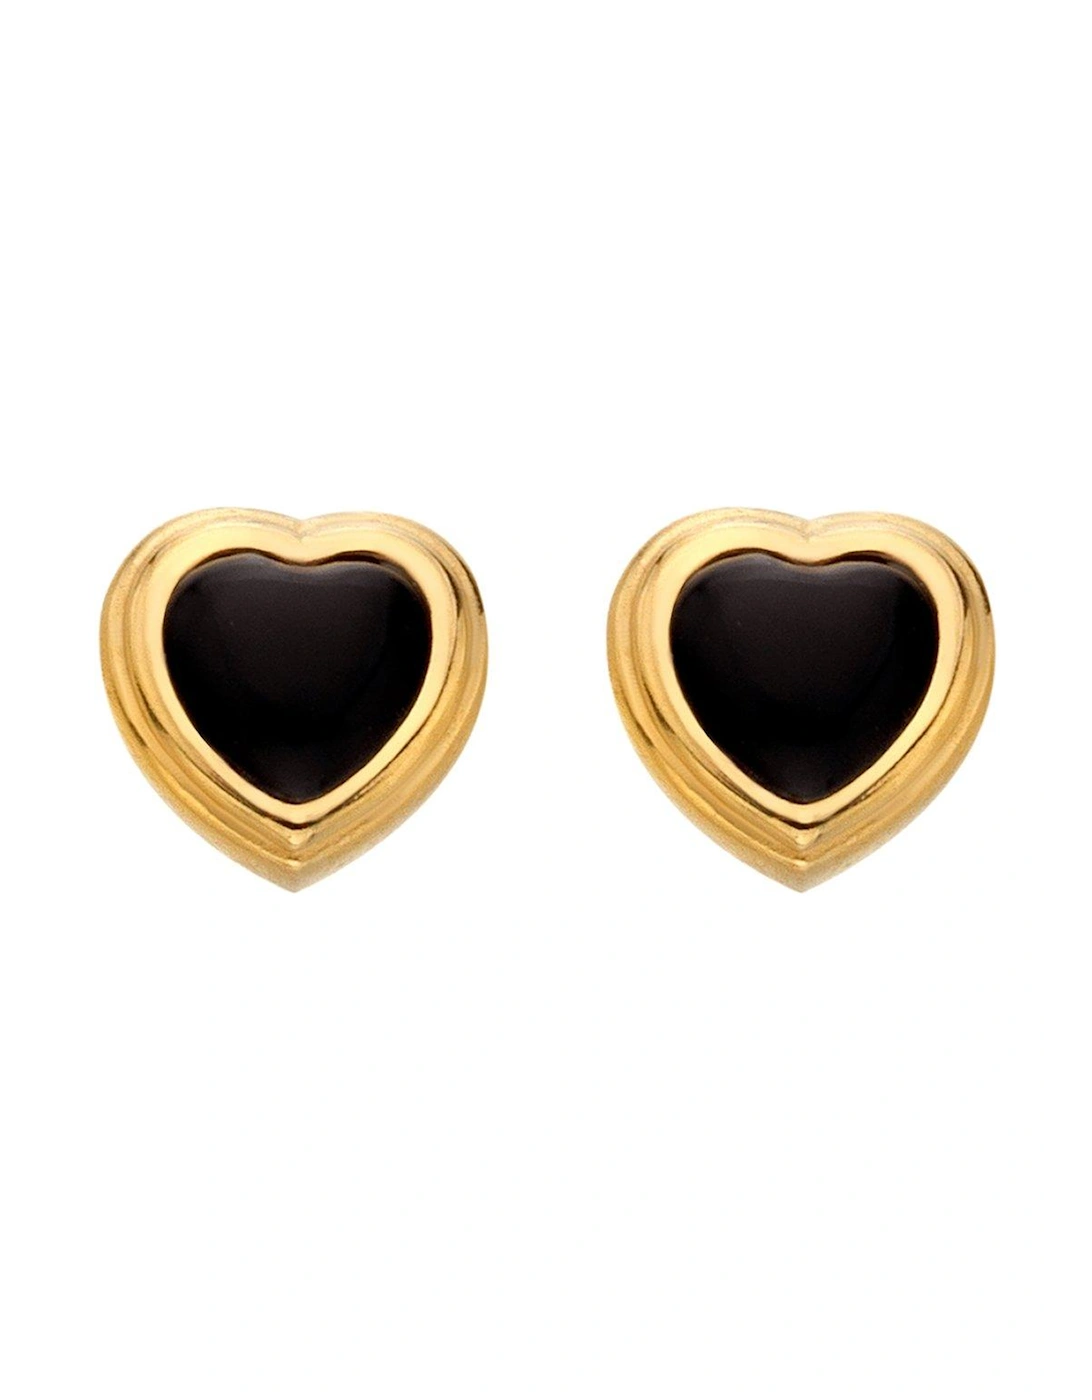 HD X JJ Heart Stud Earrings - Black Onyx, 2 of 1